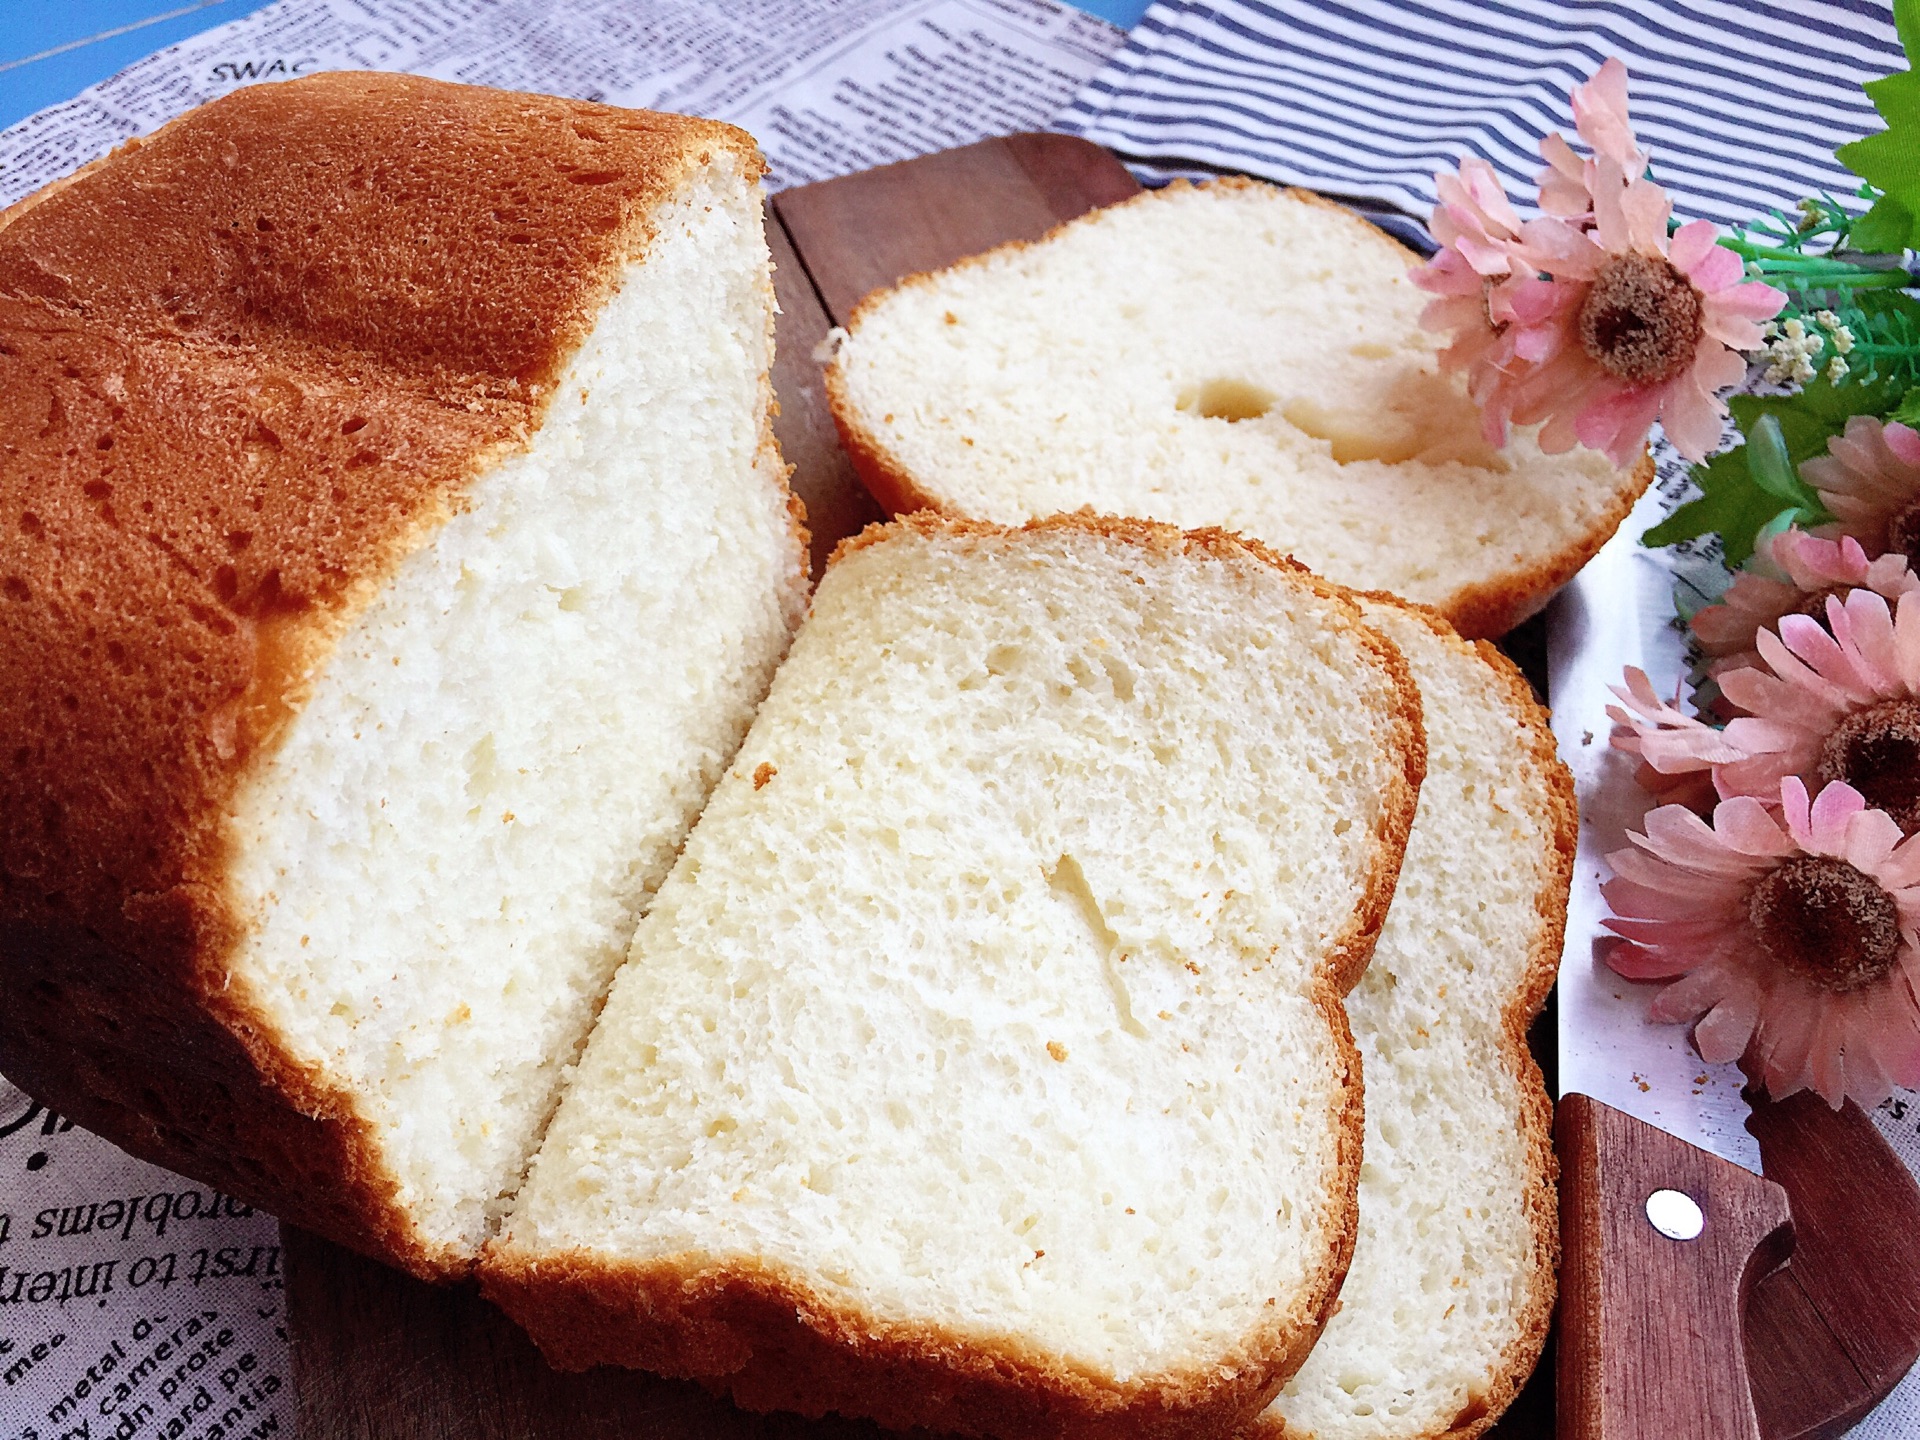 超软的蒜蓉面包&蒜香面包的做法步骤图 - 君之博客|阳光烘站